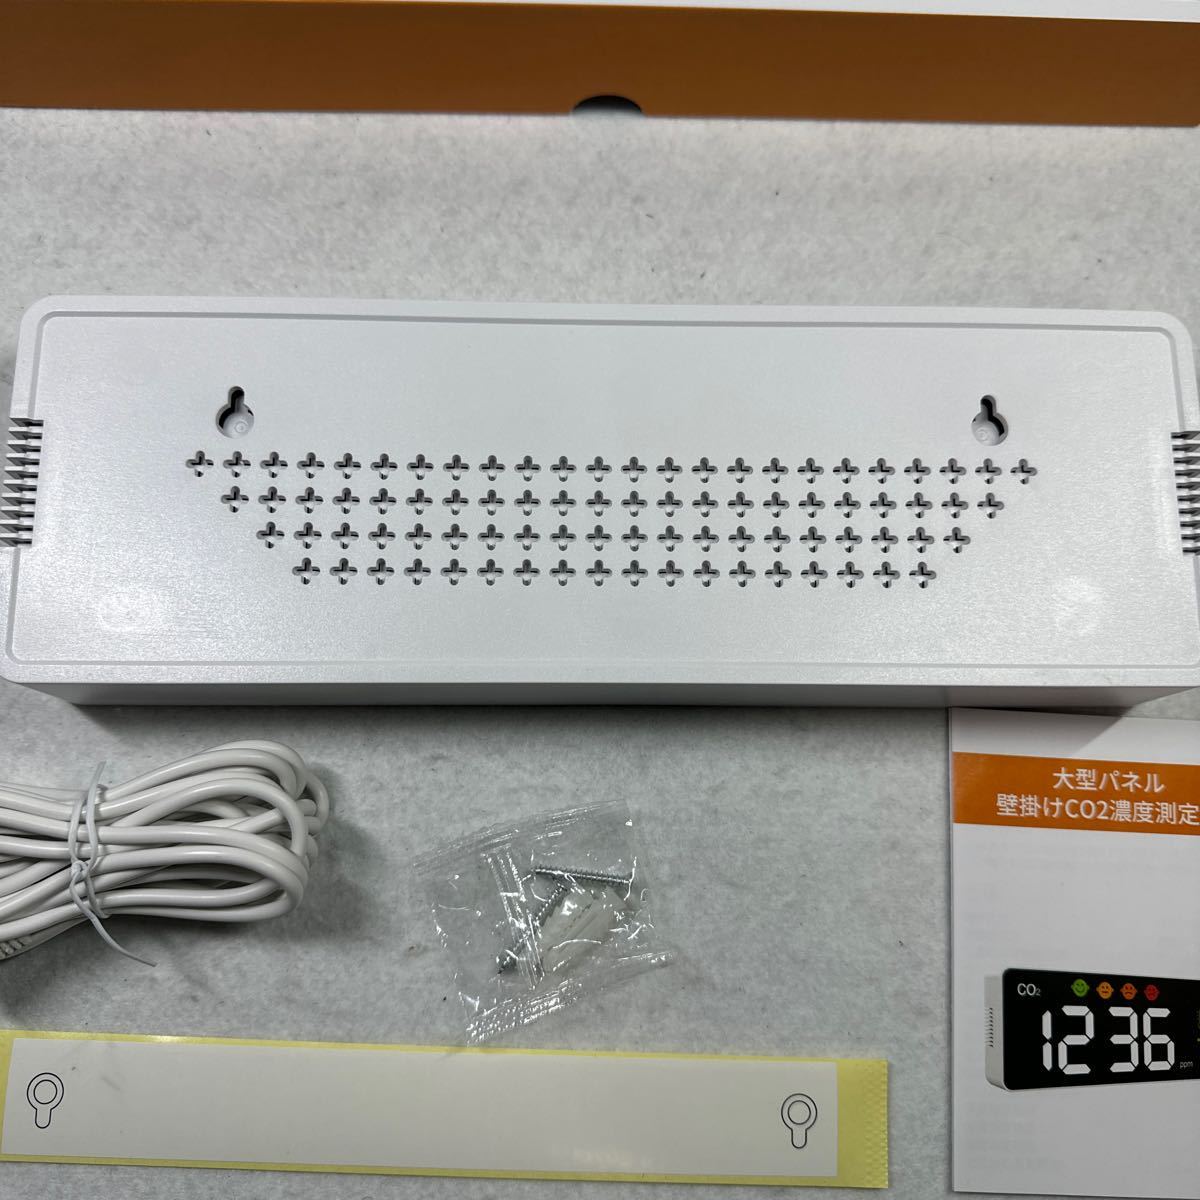 259(空気質モニター 壁掛け 高精度CO2濃度検出器 LEDスクリーン 4段階表示 デジタル_画像9